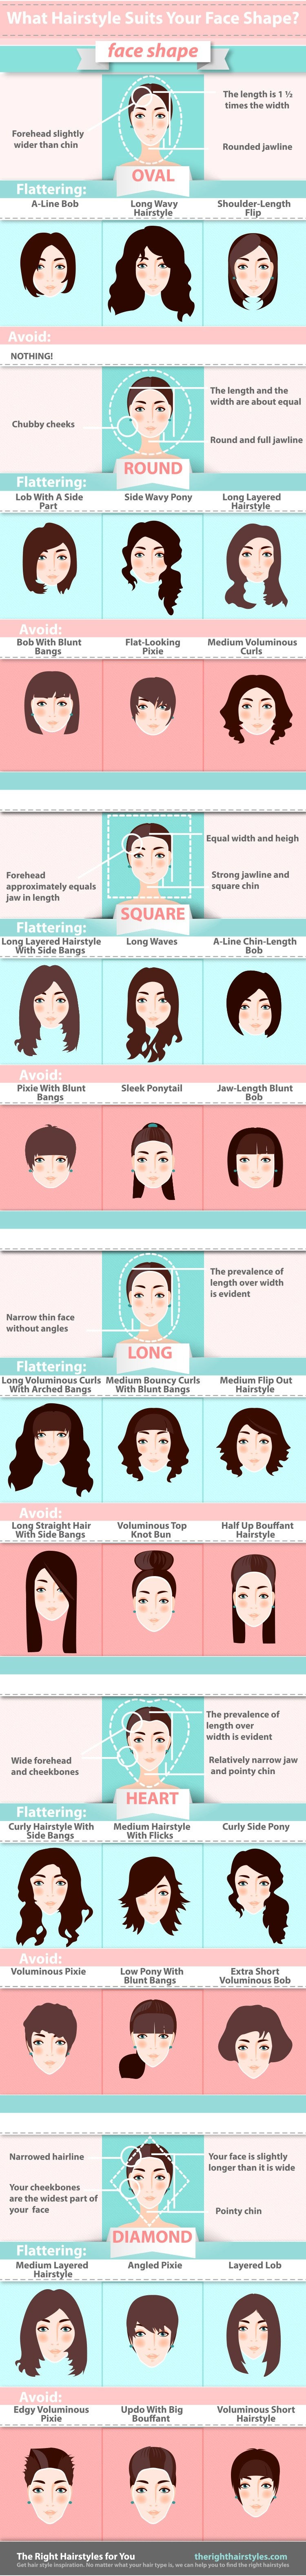 Welche Frisur passt zu deiner Gesichtsform?